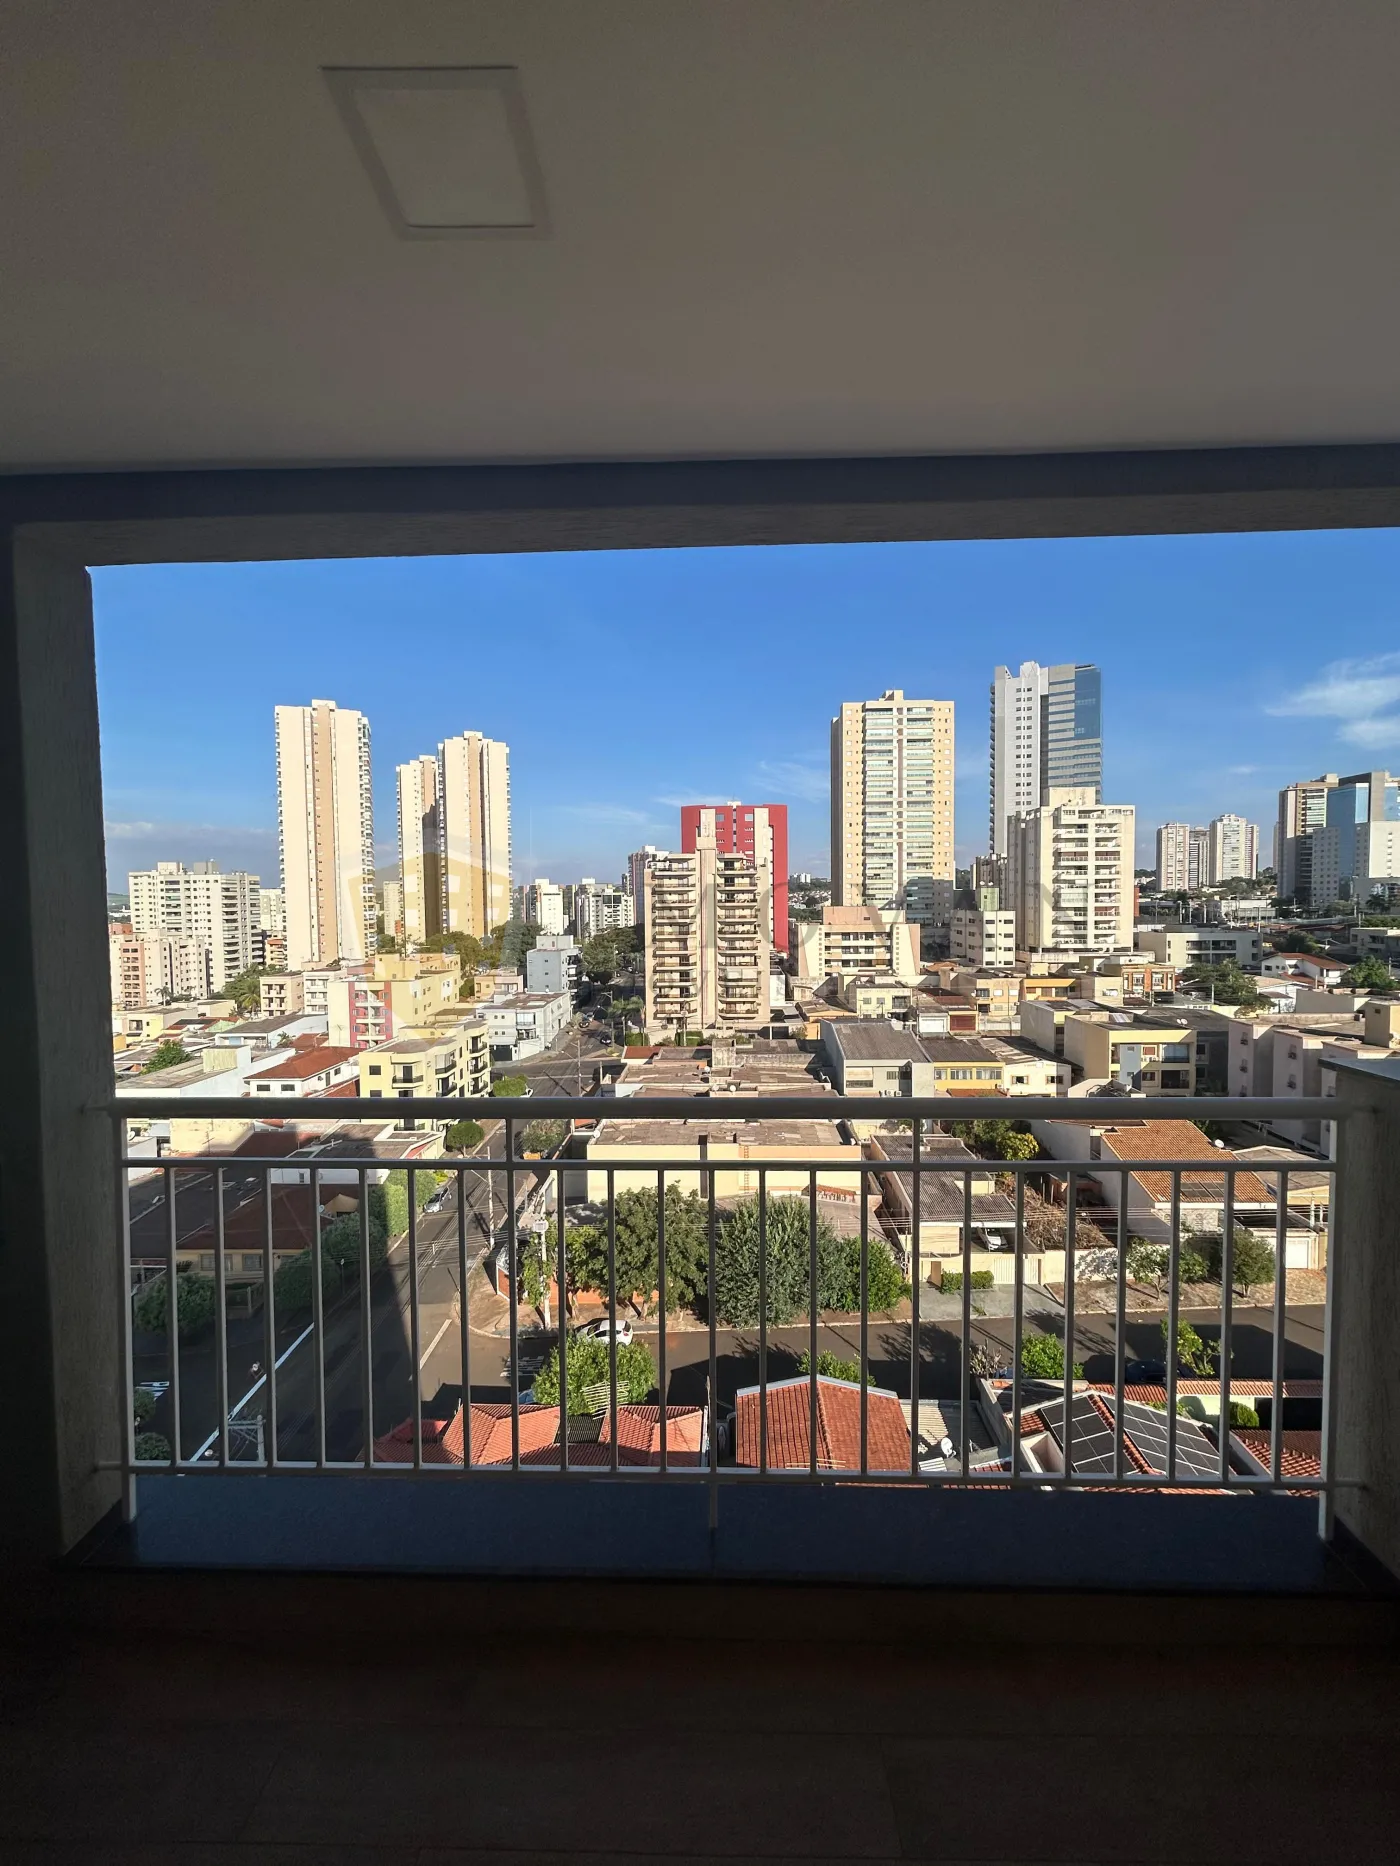 Comprar Apartamento / Padrão em Ribeirão Preto R$ 430.000,00 - Foto 3